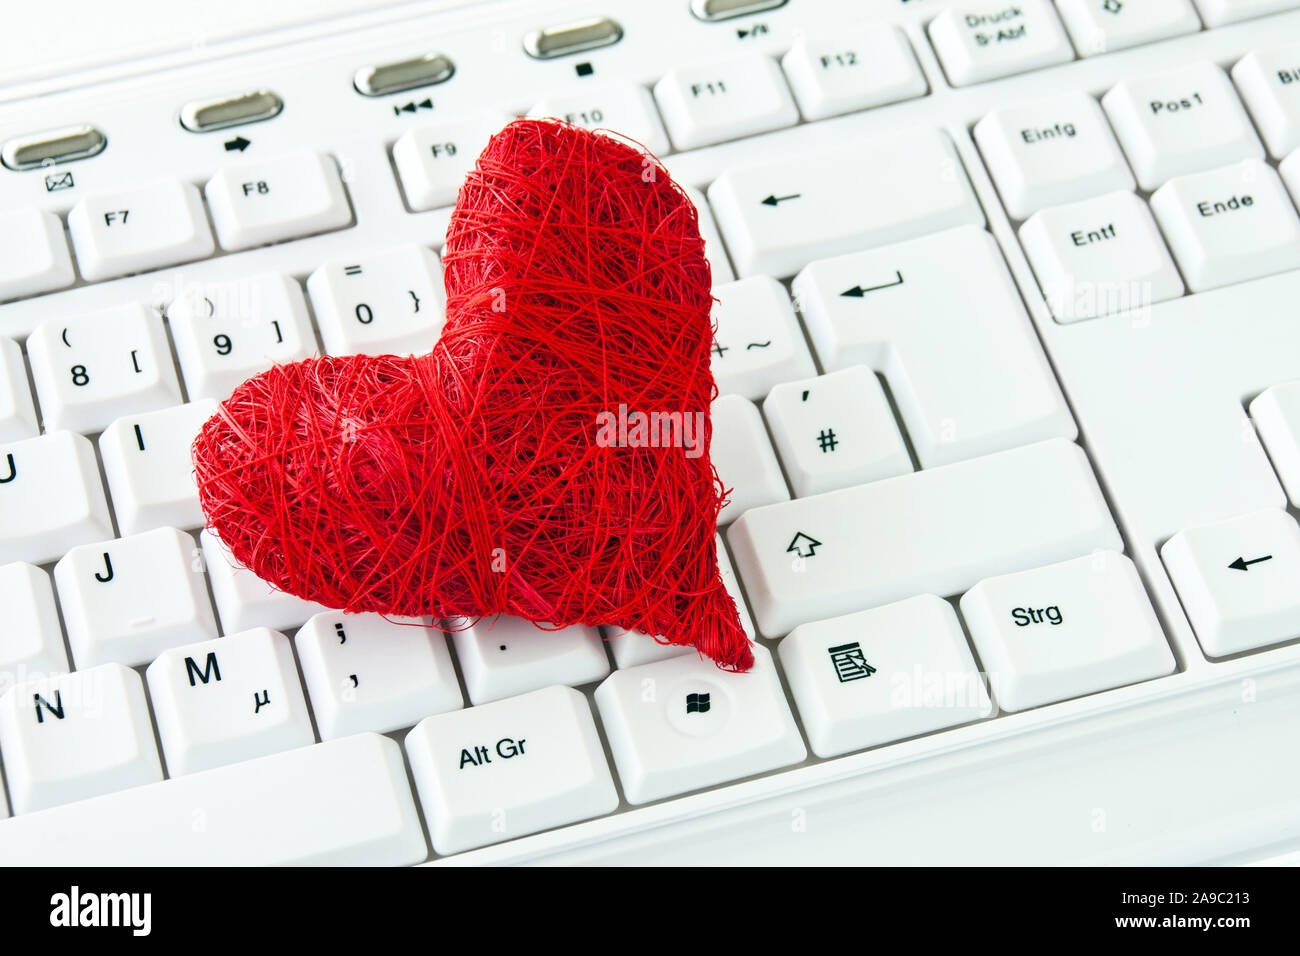 Rote Liebe Herz und Tastatur Hintergrund Stockfotografie - Alamy